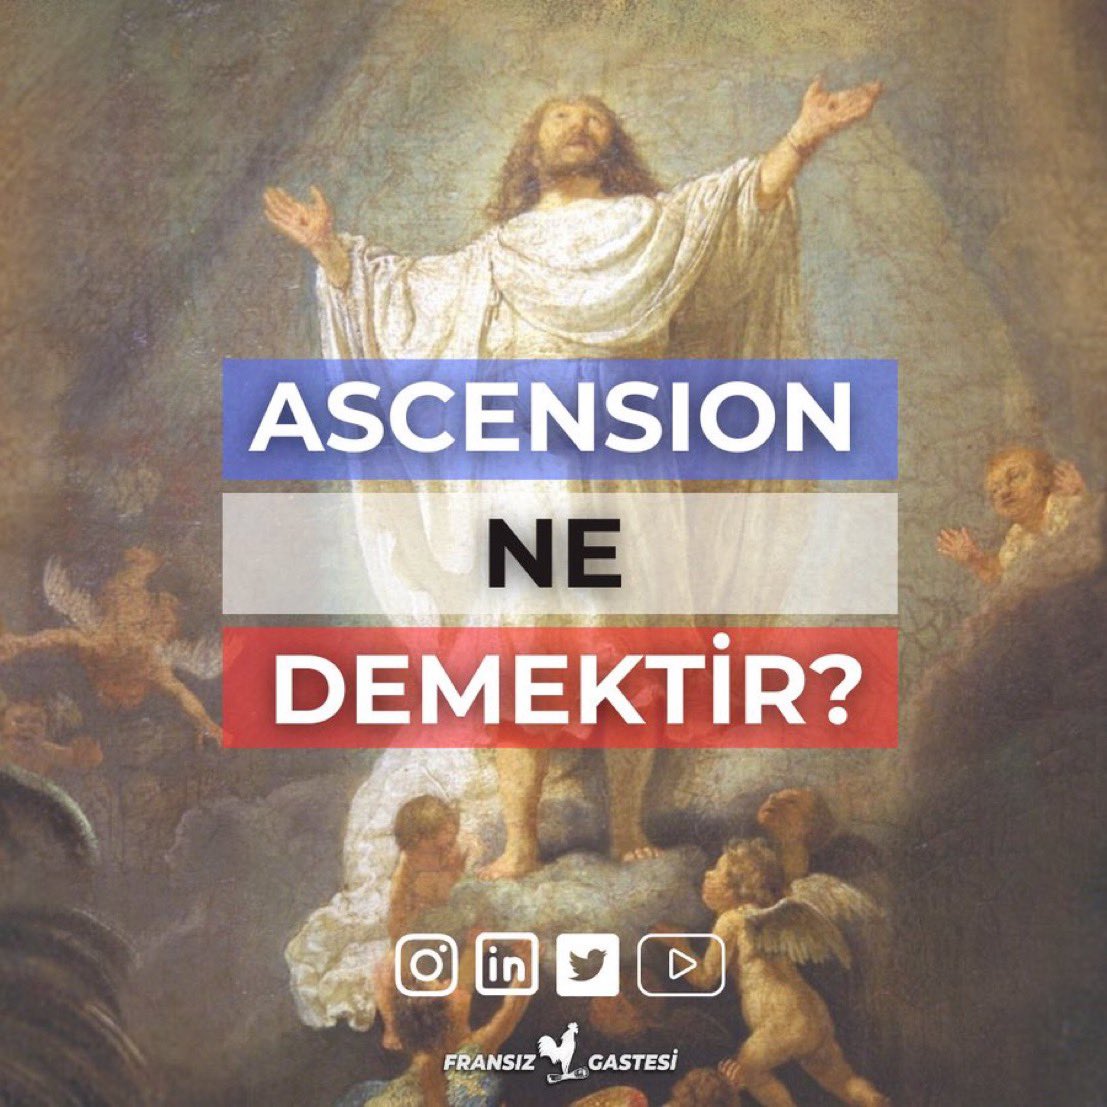 “Ascension” hangi dini olaya işaret etmektedir? Paskalya’dan sonraki kırkıncı günde, yani bugün, Katolik inancına göre İsa Mesih’in gökyüzüne yükselişi hadisesi gerçekleşmiştir. Fransa’da bugün resmi tatildir ve dini bir bayram olarak kutlanmaktadır. ✝️ #Ascension